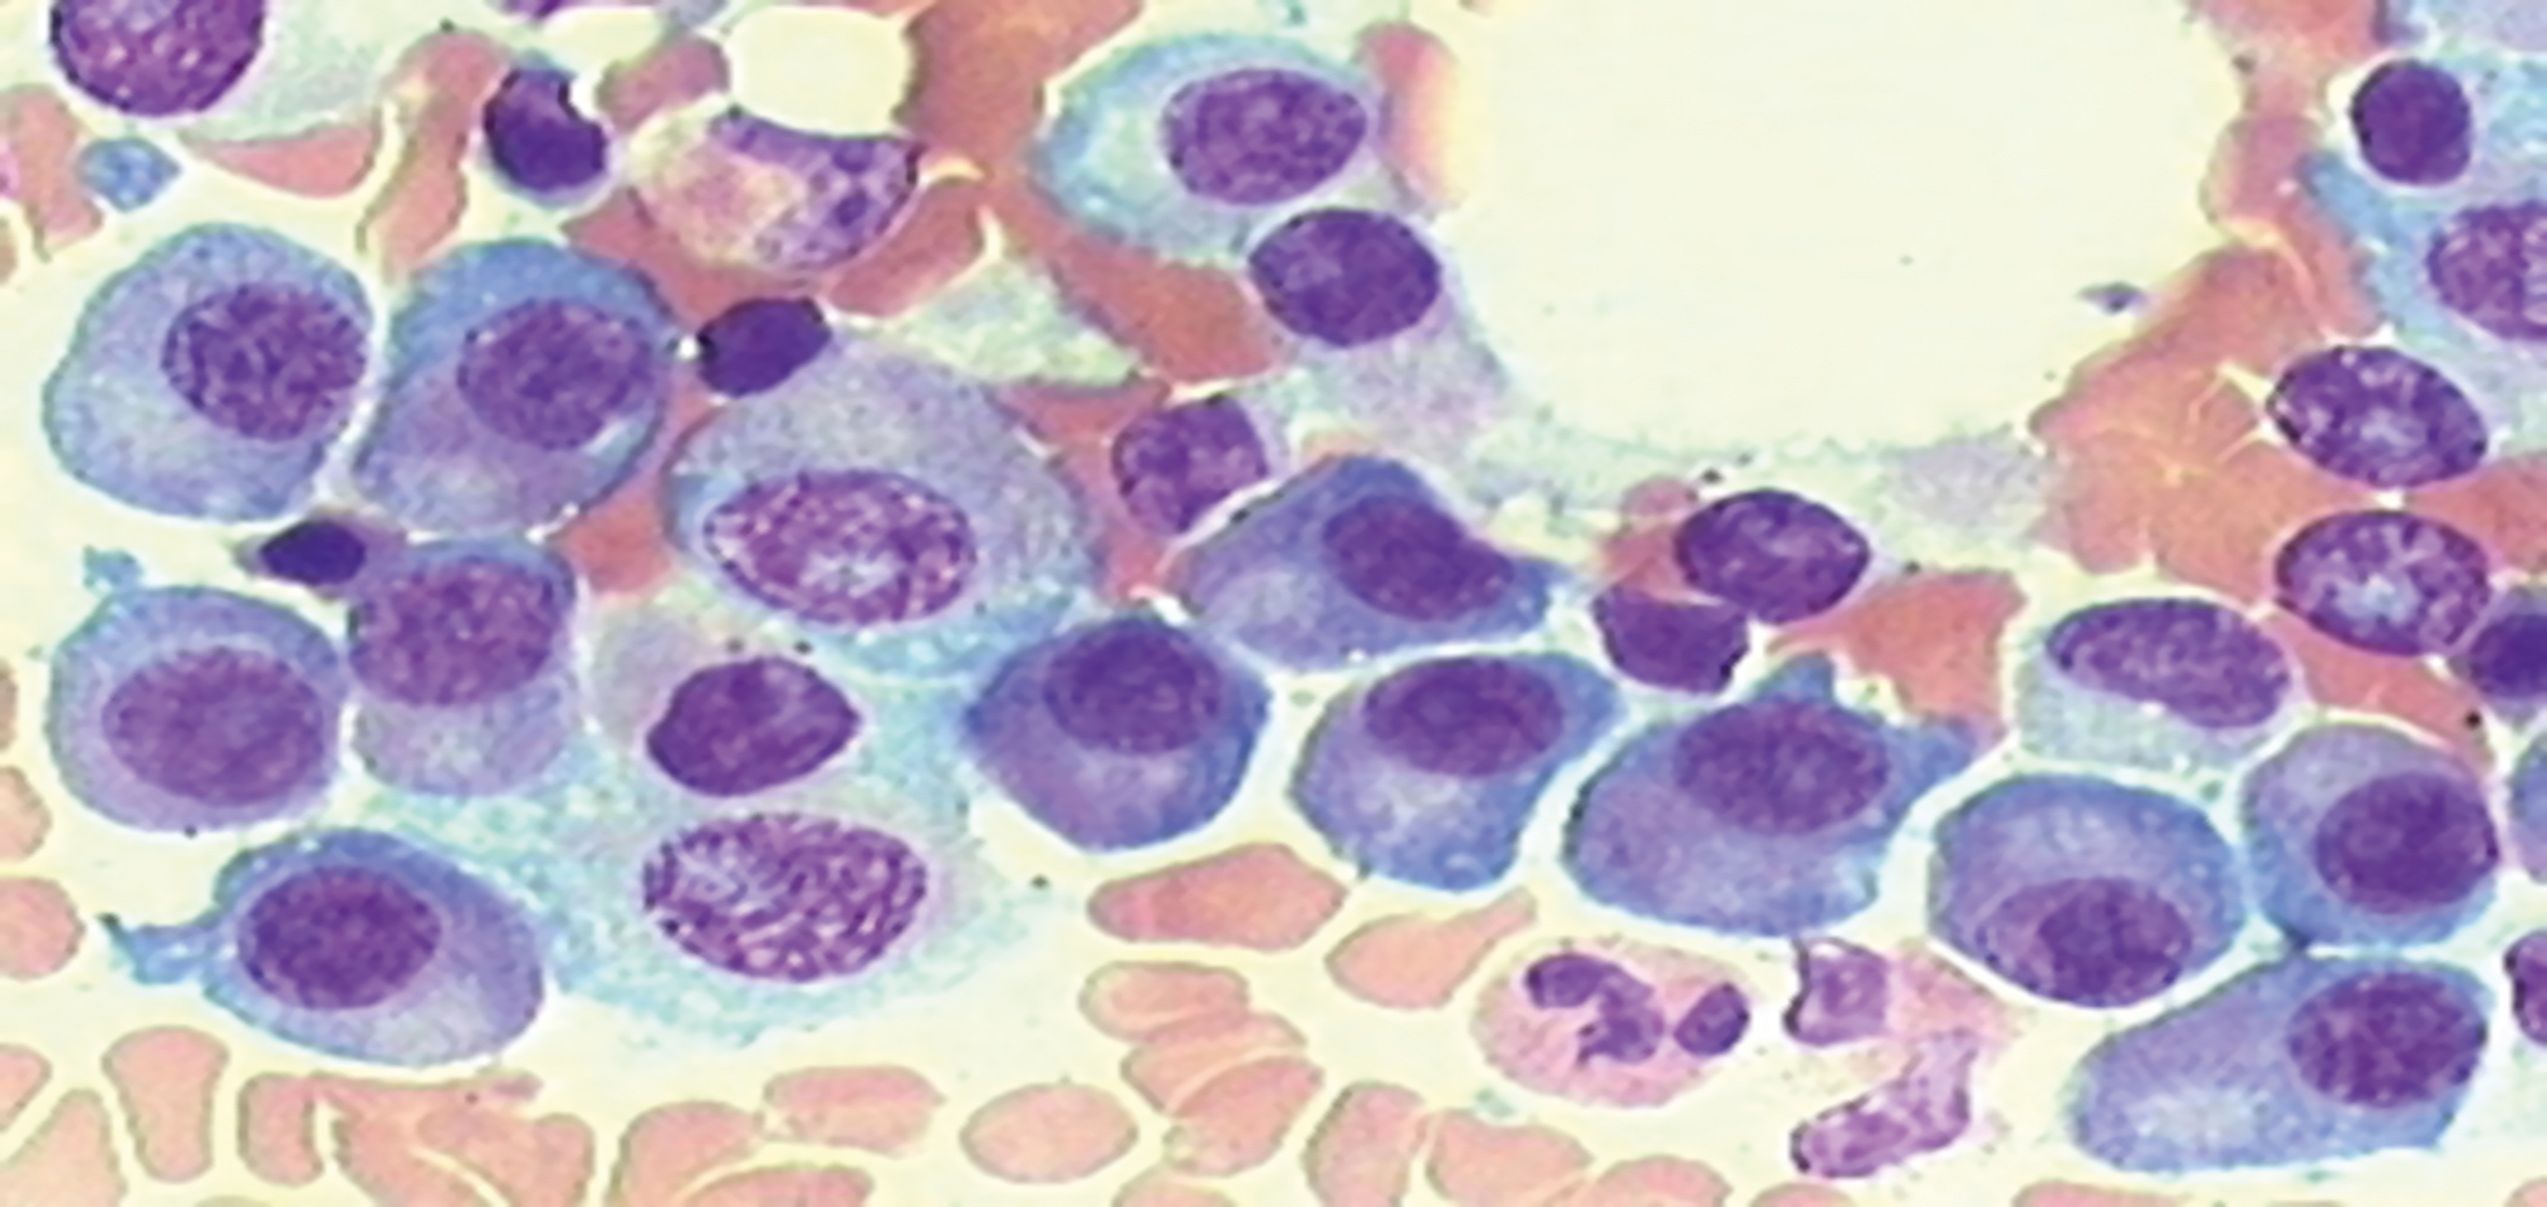 Zellpräparat eines Myelompatienten